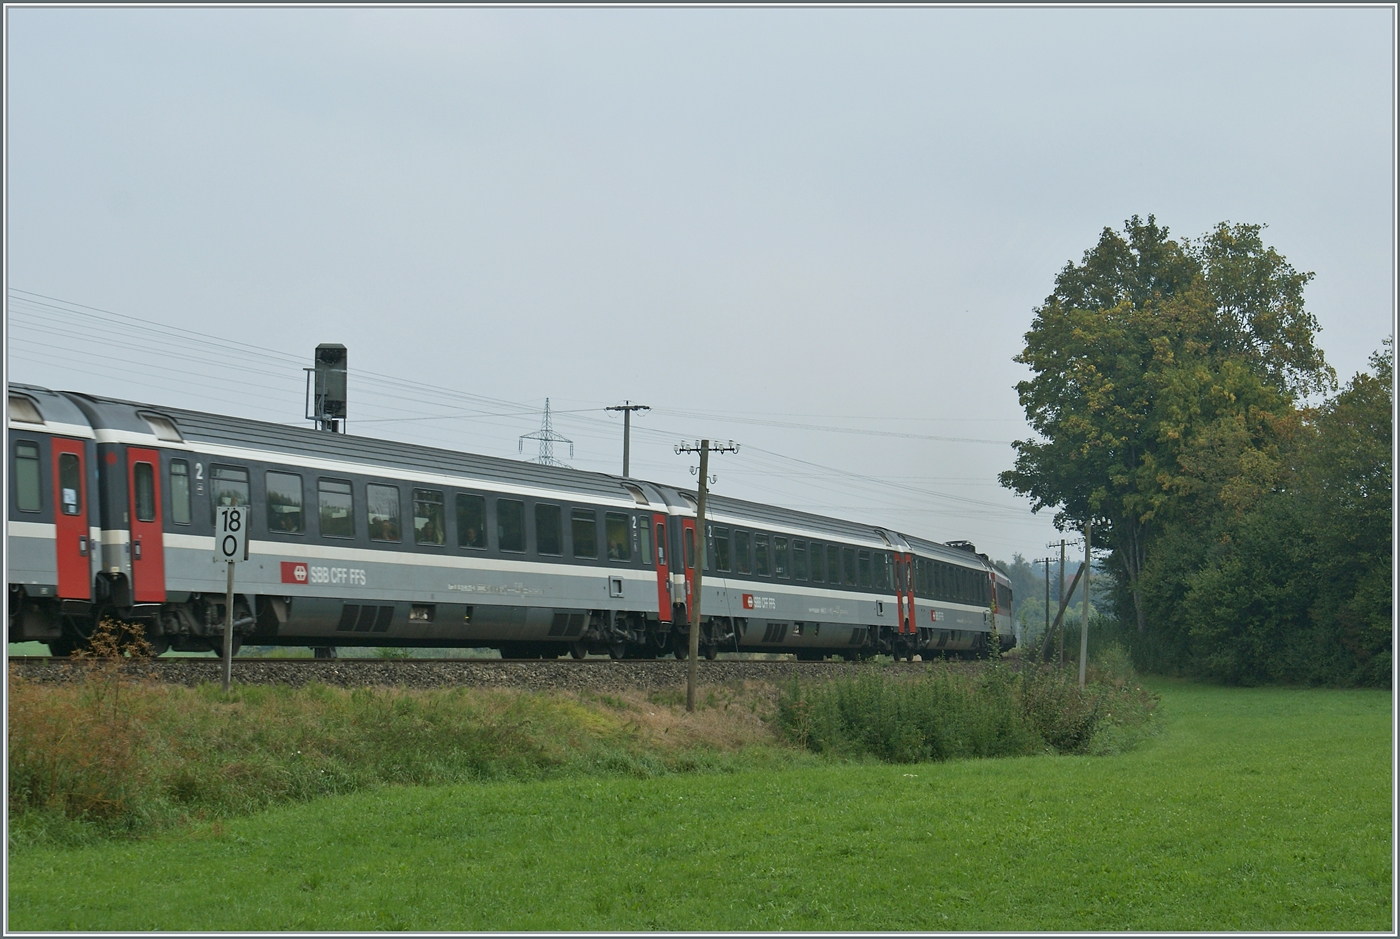 Für den internationalen Verkehr beschaffte die SBB Grossraumwagen welche vom Wagenkasten her für die 1. und 2. Klasse den gleichen Aufbau aufwiesen. Das Bild zeigt 2 Klasse Wagen bei Hergatz auf der Fahrt nach München. 

11. Sept. 2009 